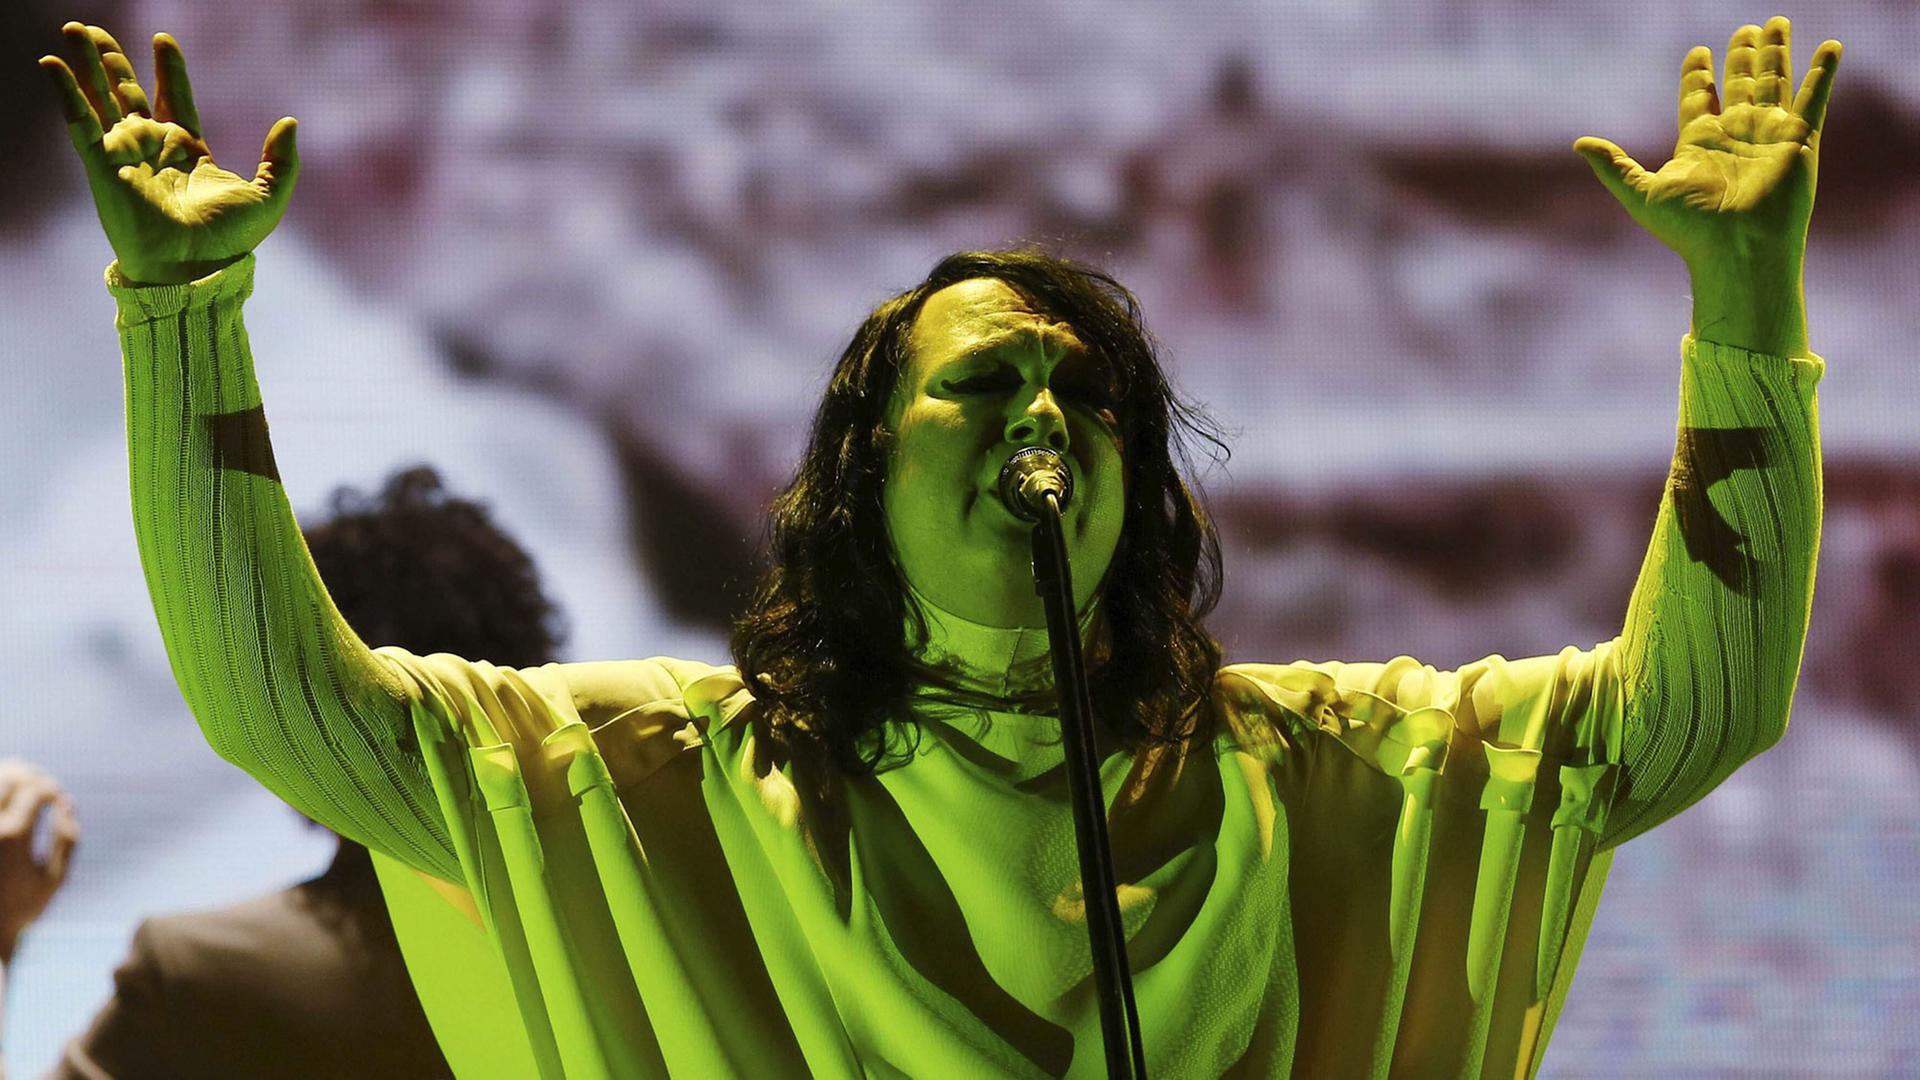 Die Sängerin Anohni, alias Antony Hegarty, bei einem Auftritt beim Primavera Sound Music Festival im spanischen Barcelona am 28.5.2015